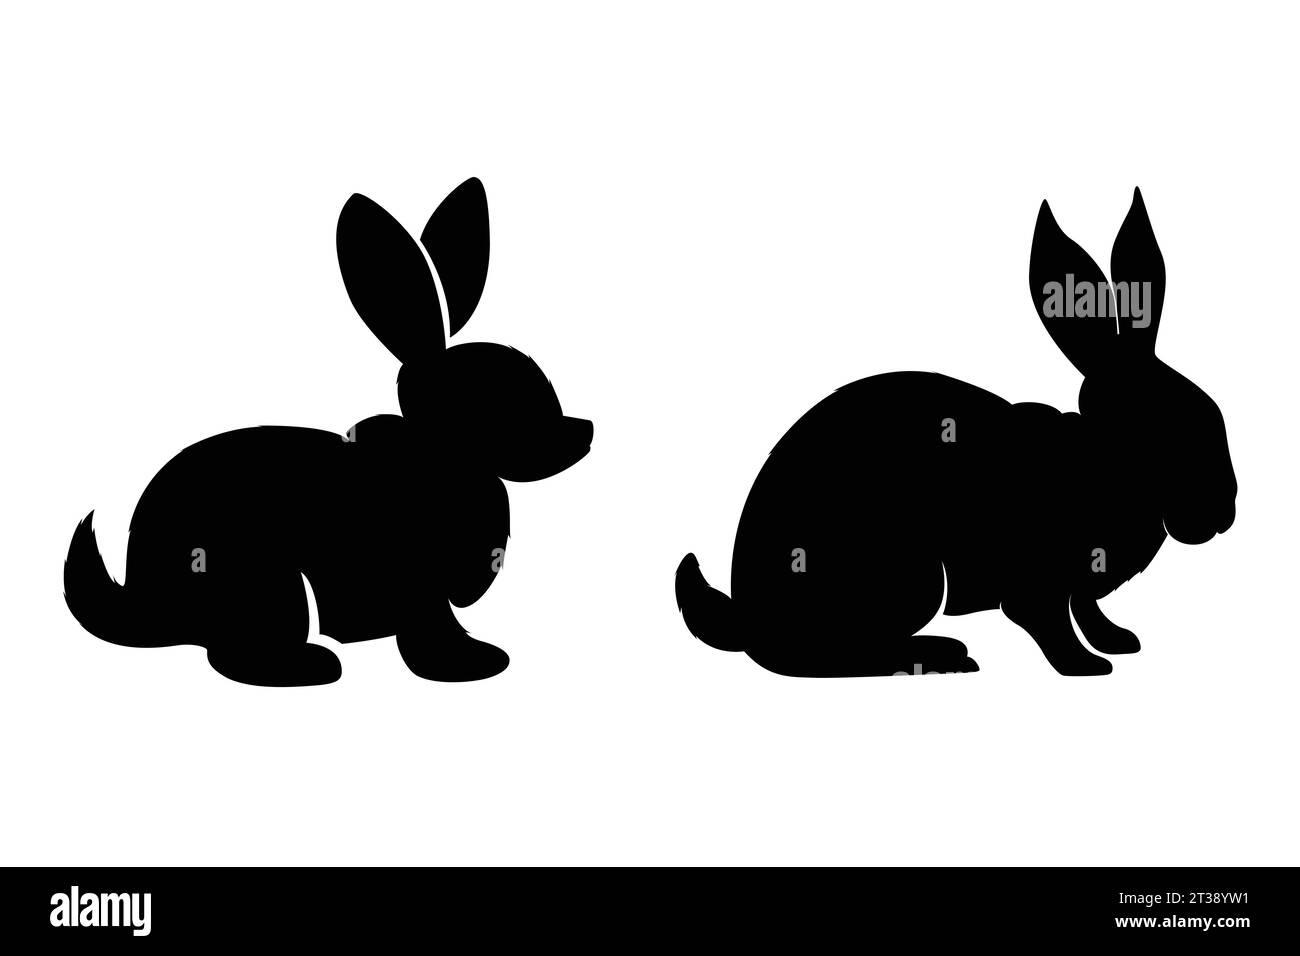 coniglio bianco e nero con un disegno a mano Illustrazione Vettoriale